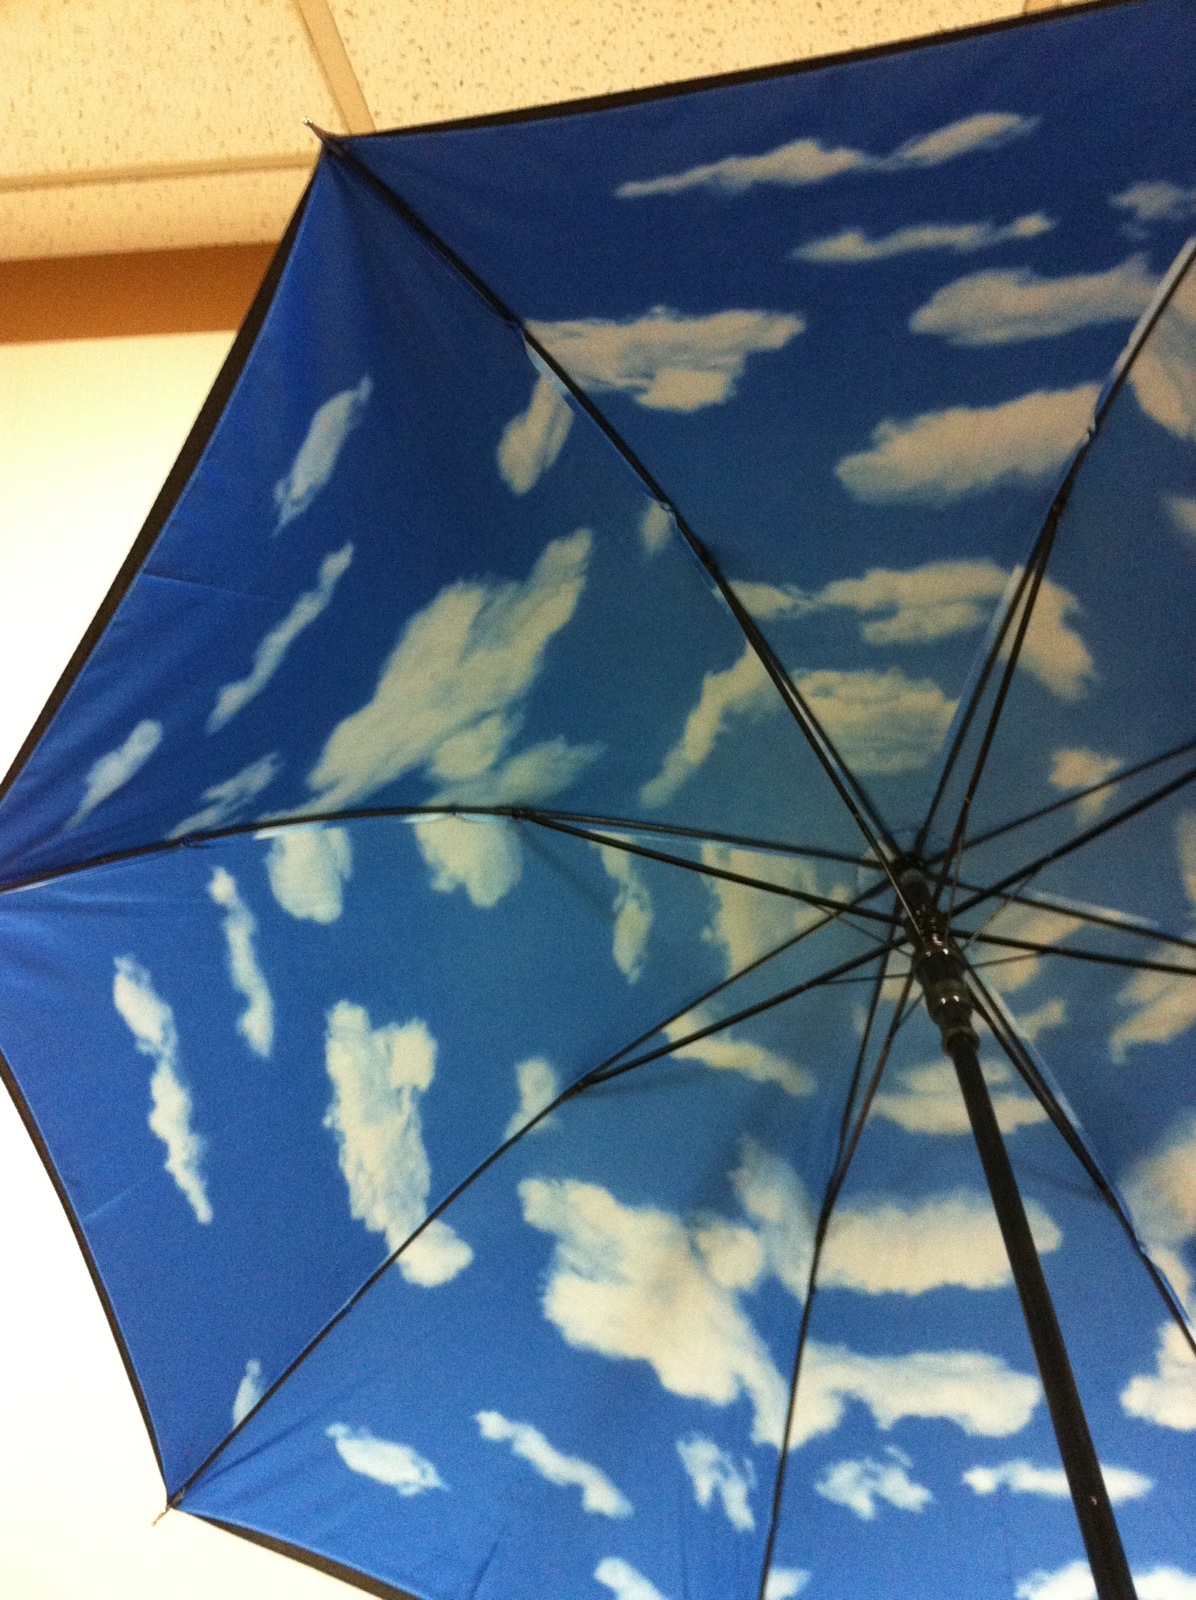 20120601161948.jpg : 하늘 우산 ^^